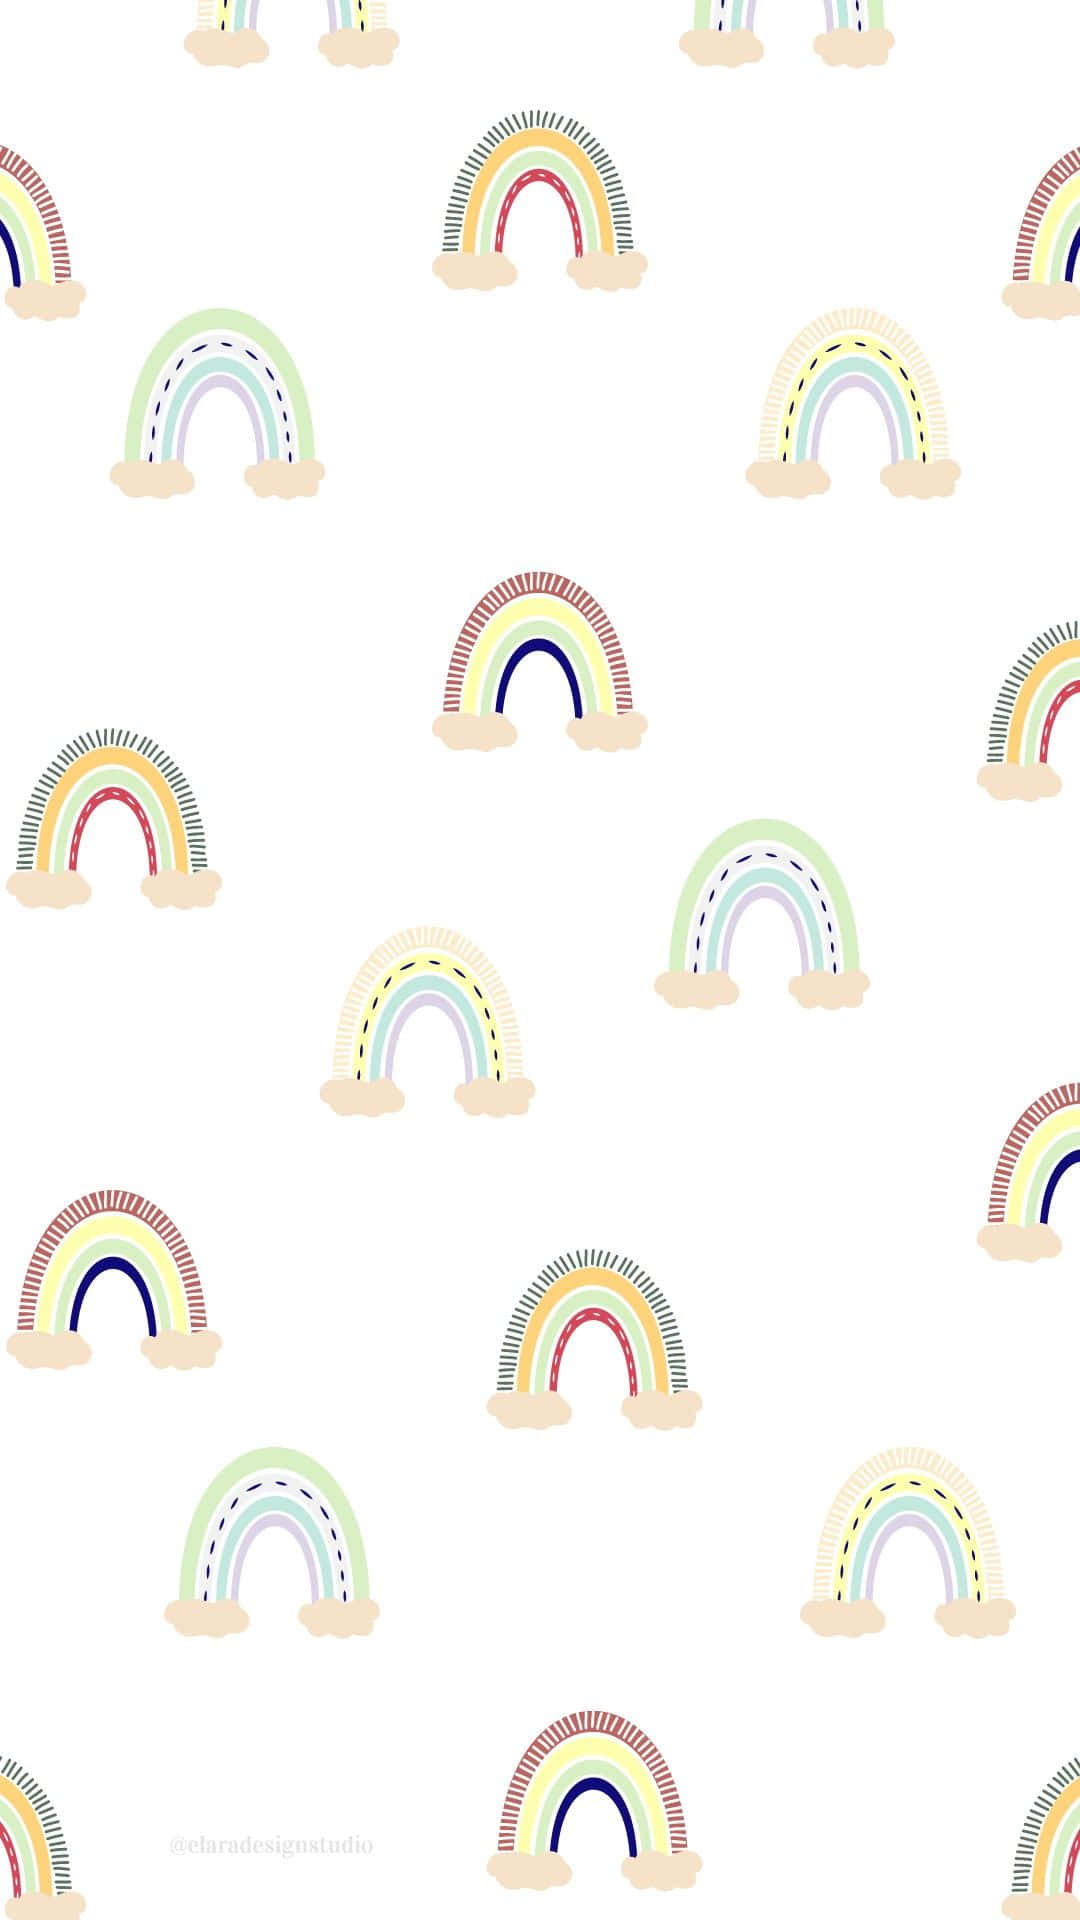 Einepastellfarbene Regenbogenpalette Auf Einem Iphone Wallpaper